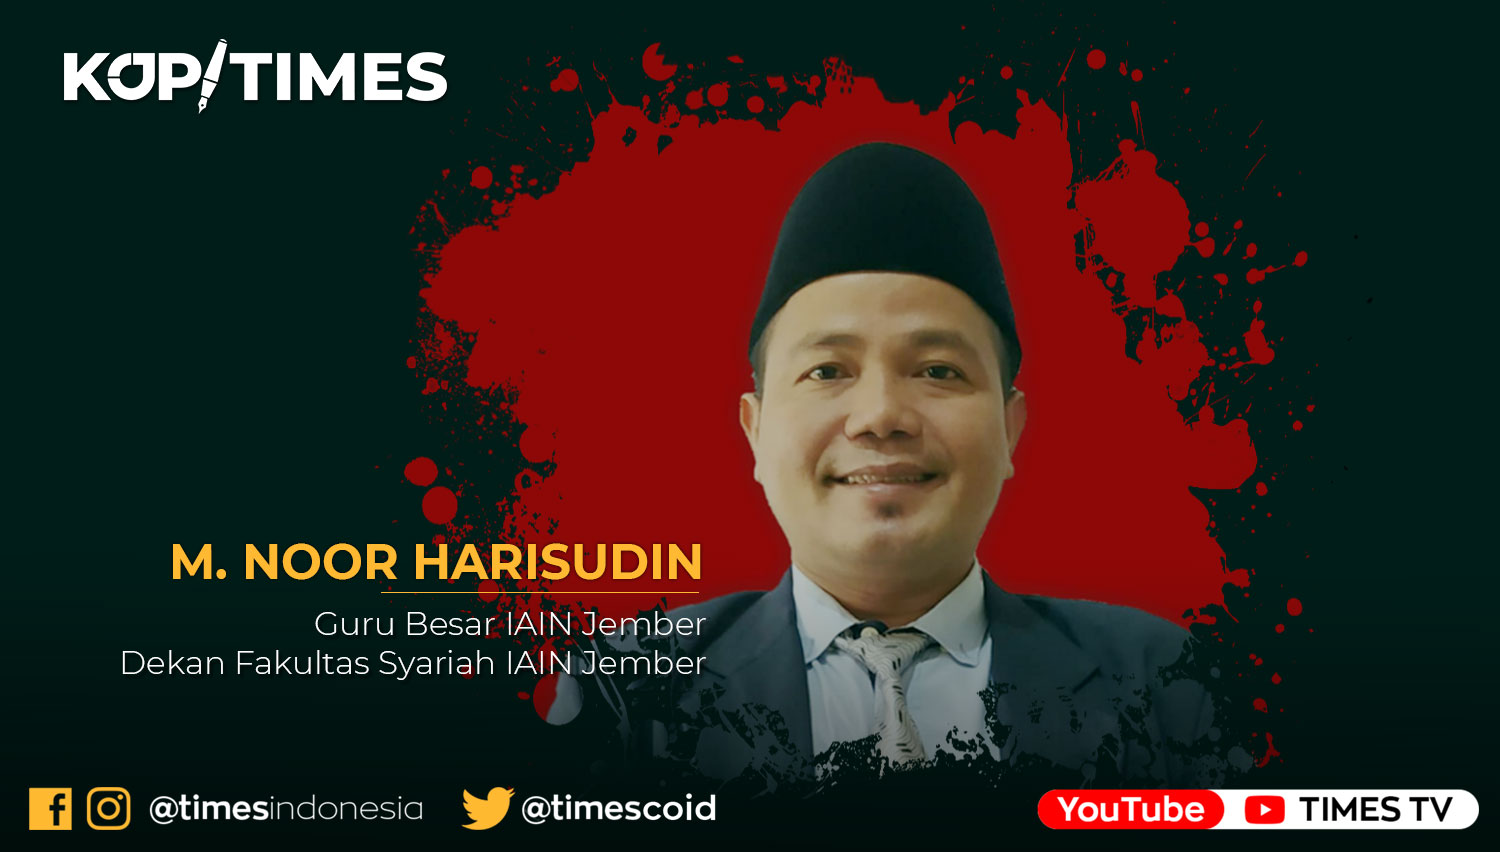 M. Noor Harisudin, Guru Besar IAIN Jember Dekan Fakultas Syariah IAIN Jember